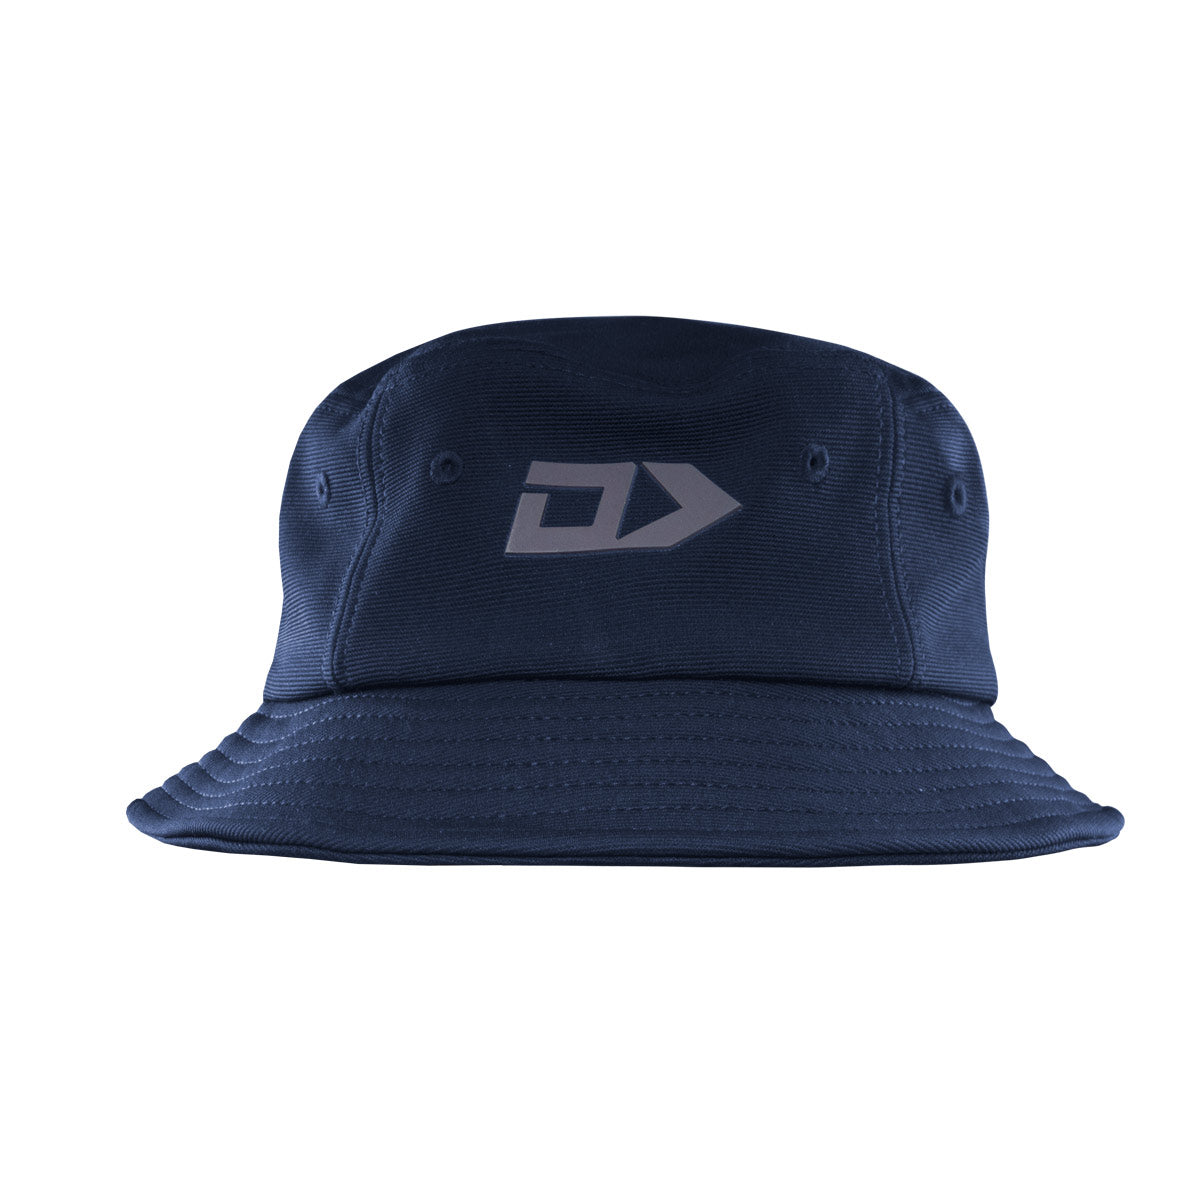 DS Navy Bucket Hat